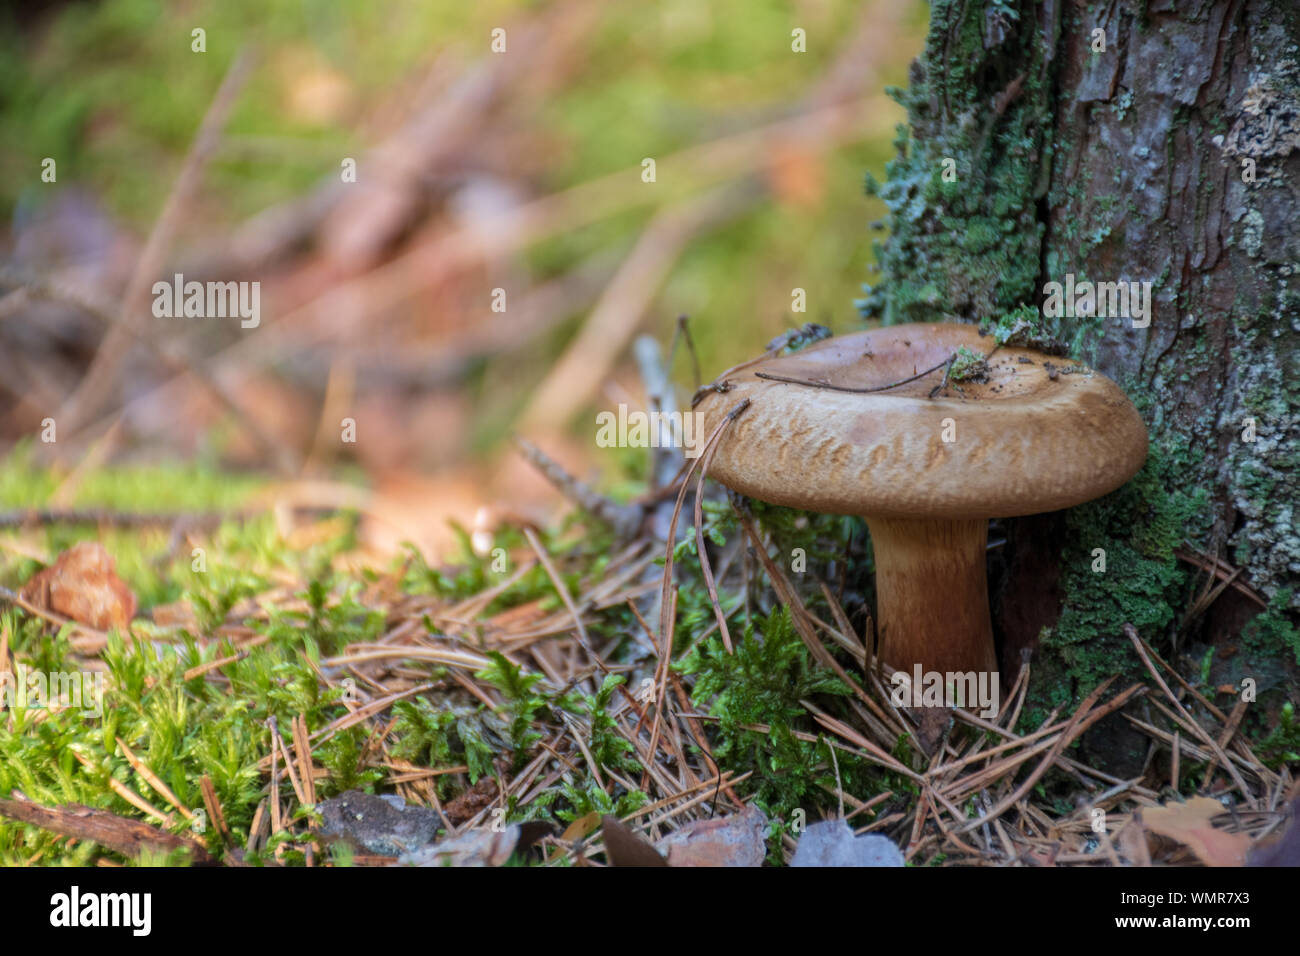 Milkcap barbu champignons près de pine tree trunk Banque D'Images